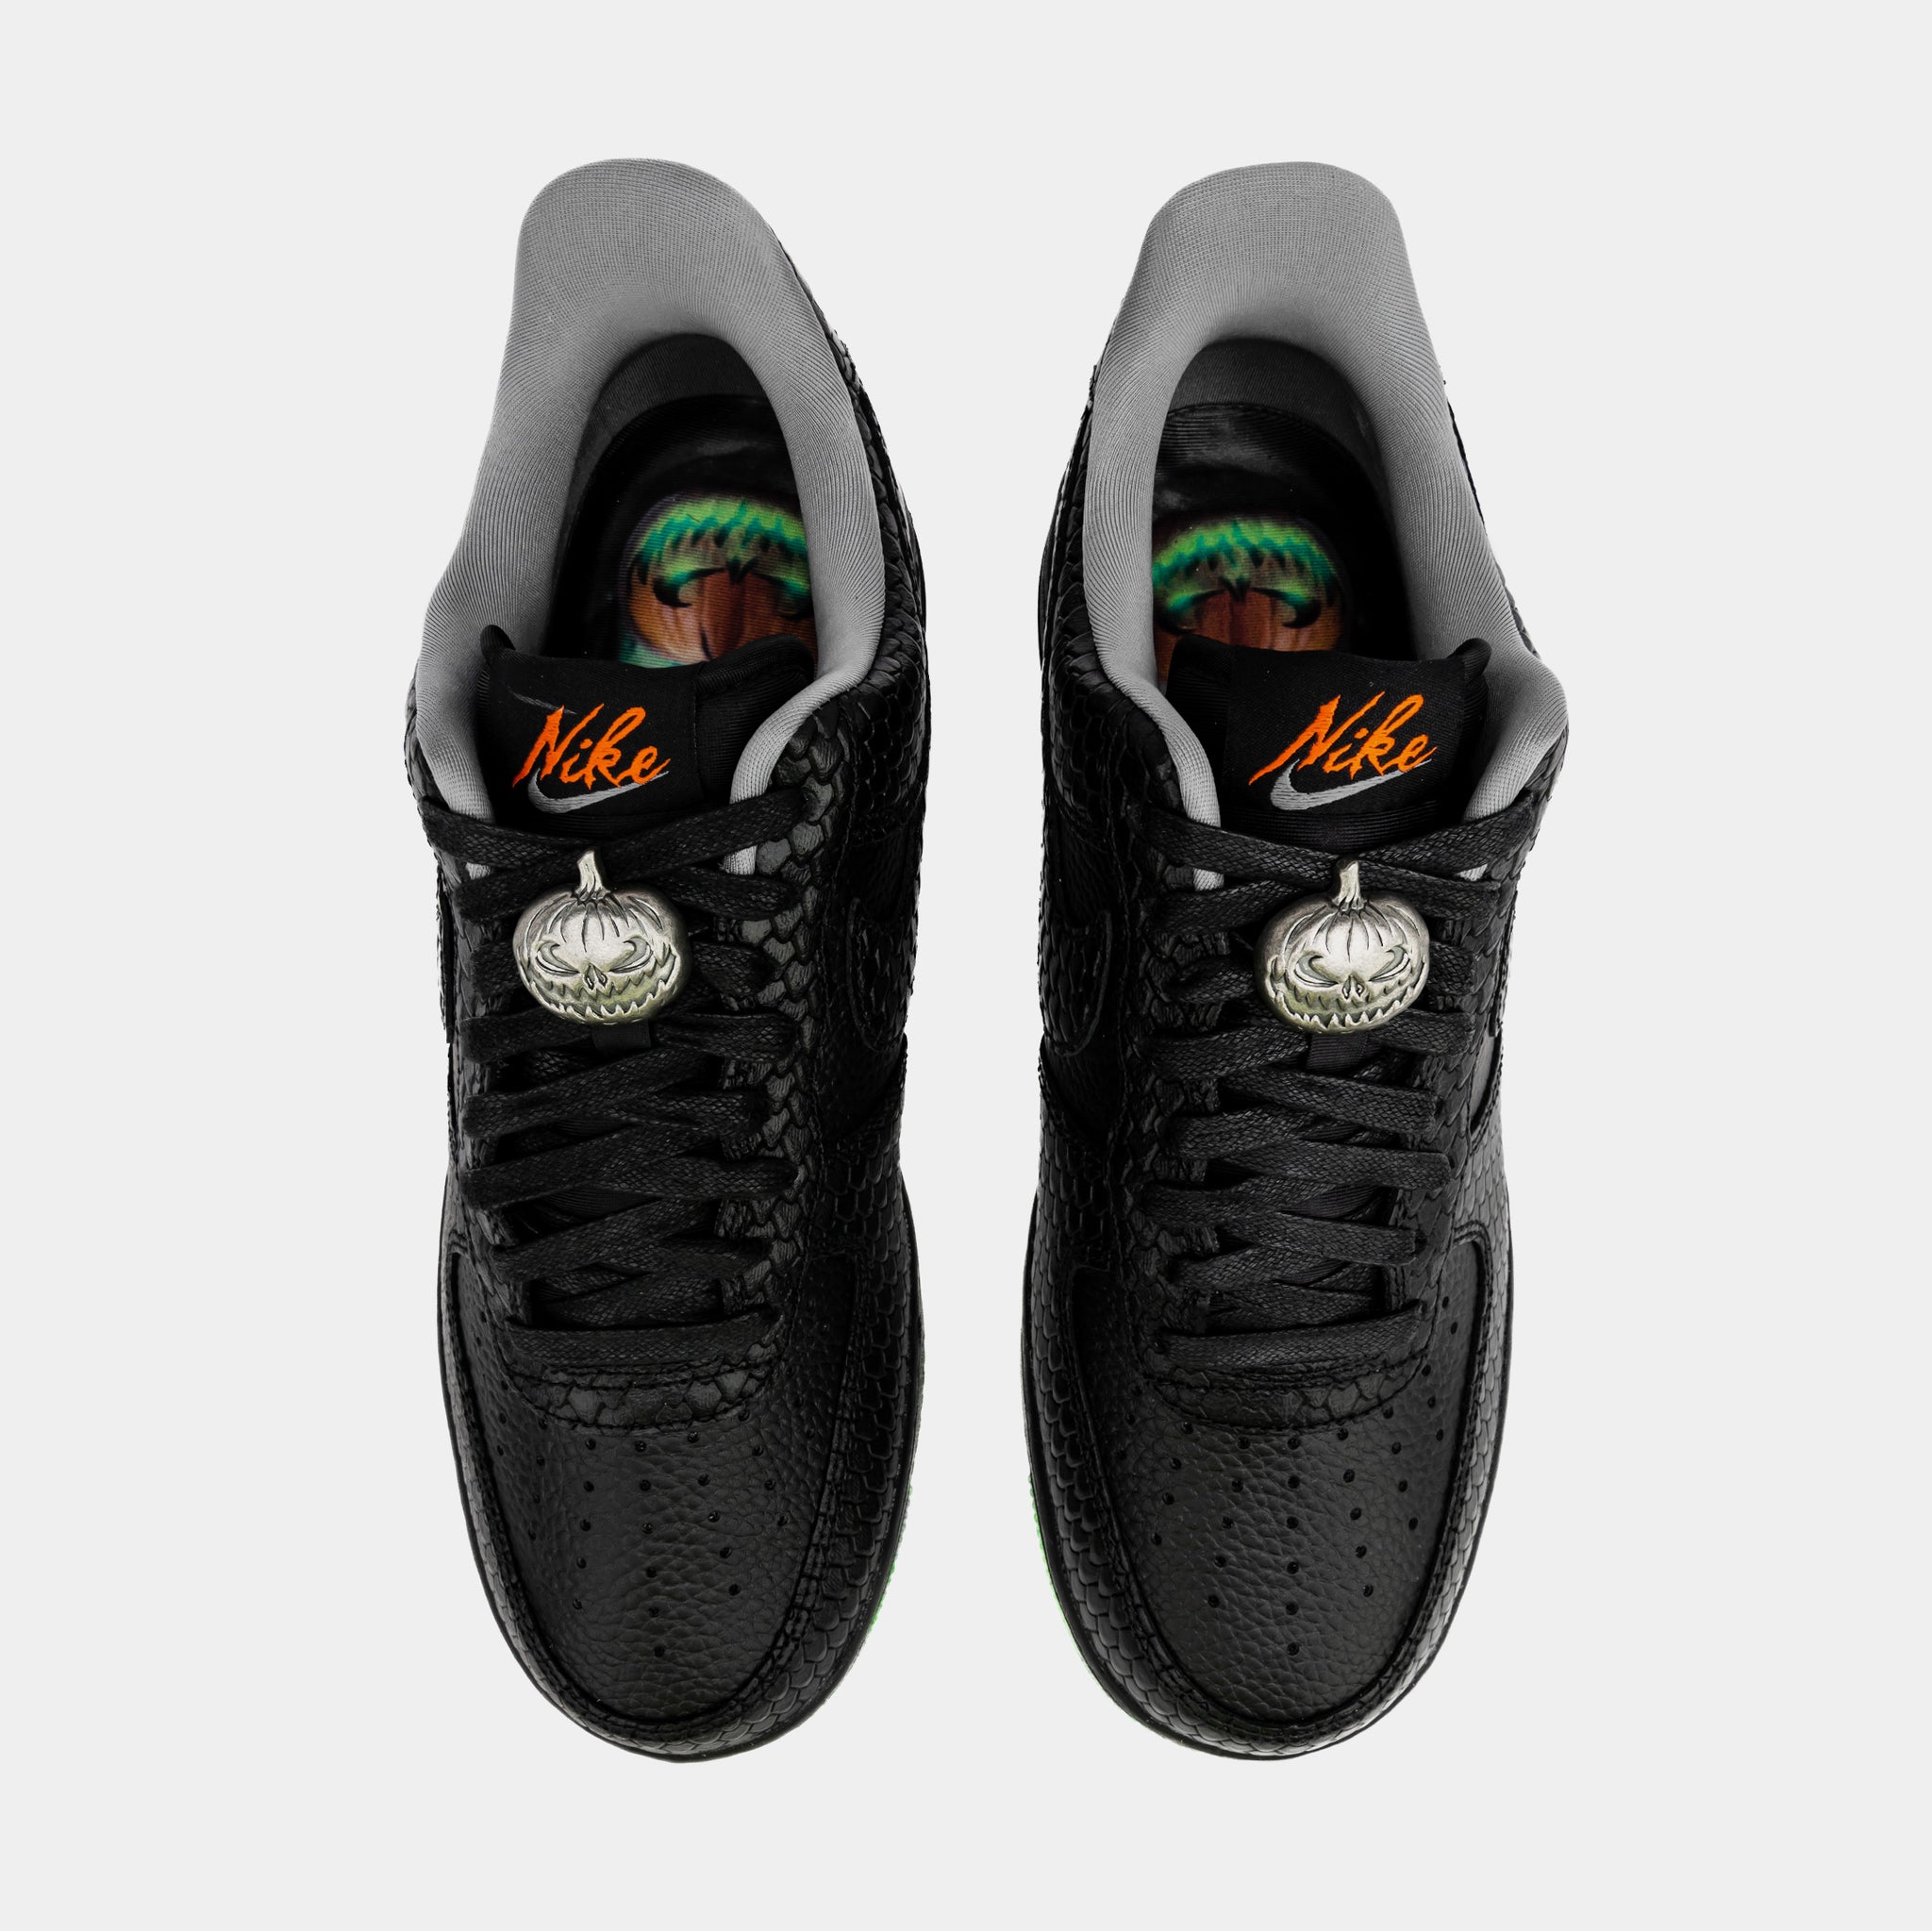 Nike Air Force 1 '0 Lv 'metallic Swoosh Pack - Black' for Men